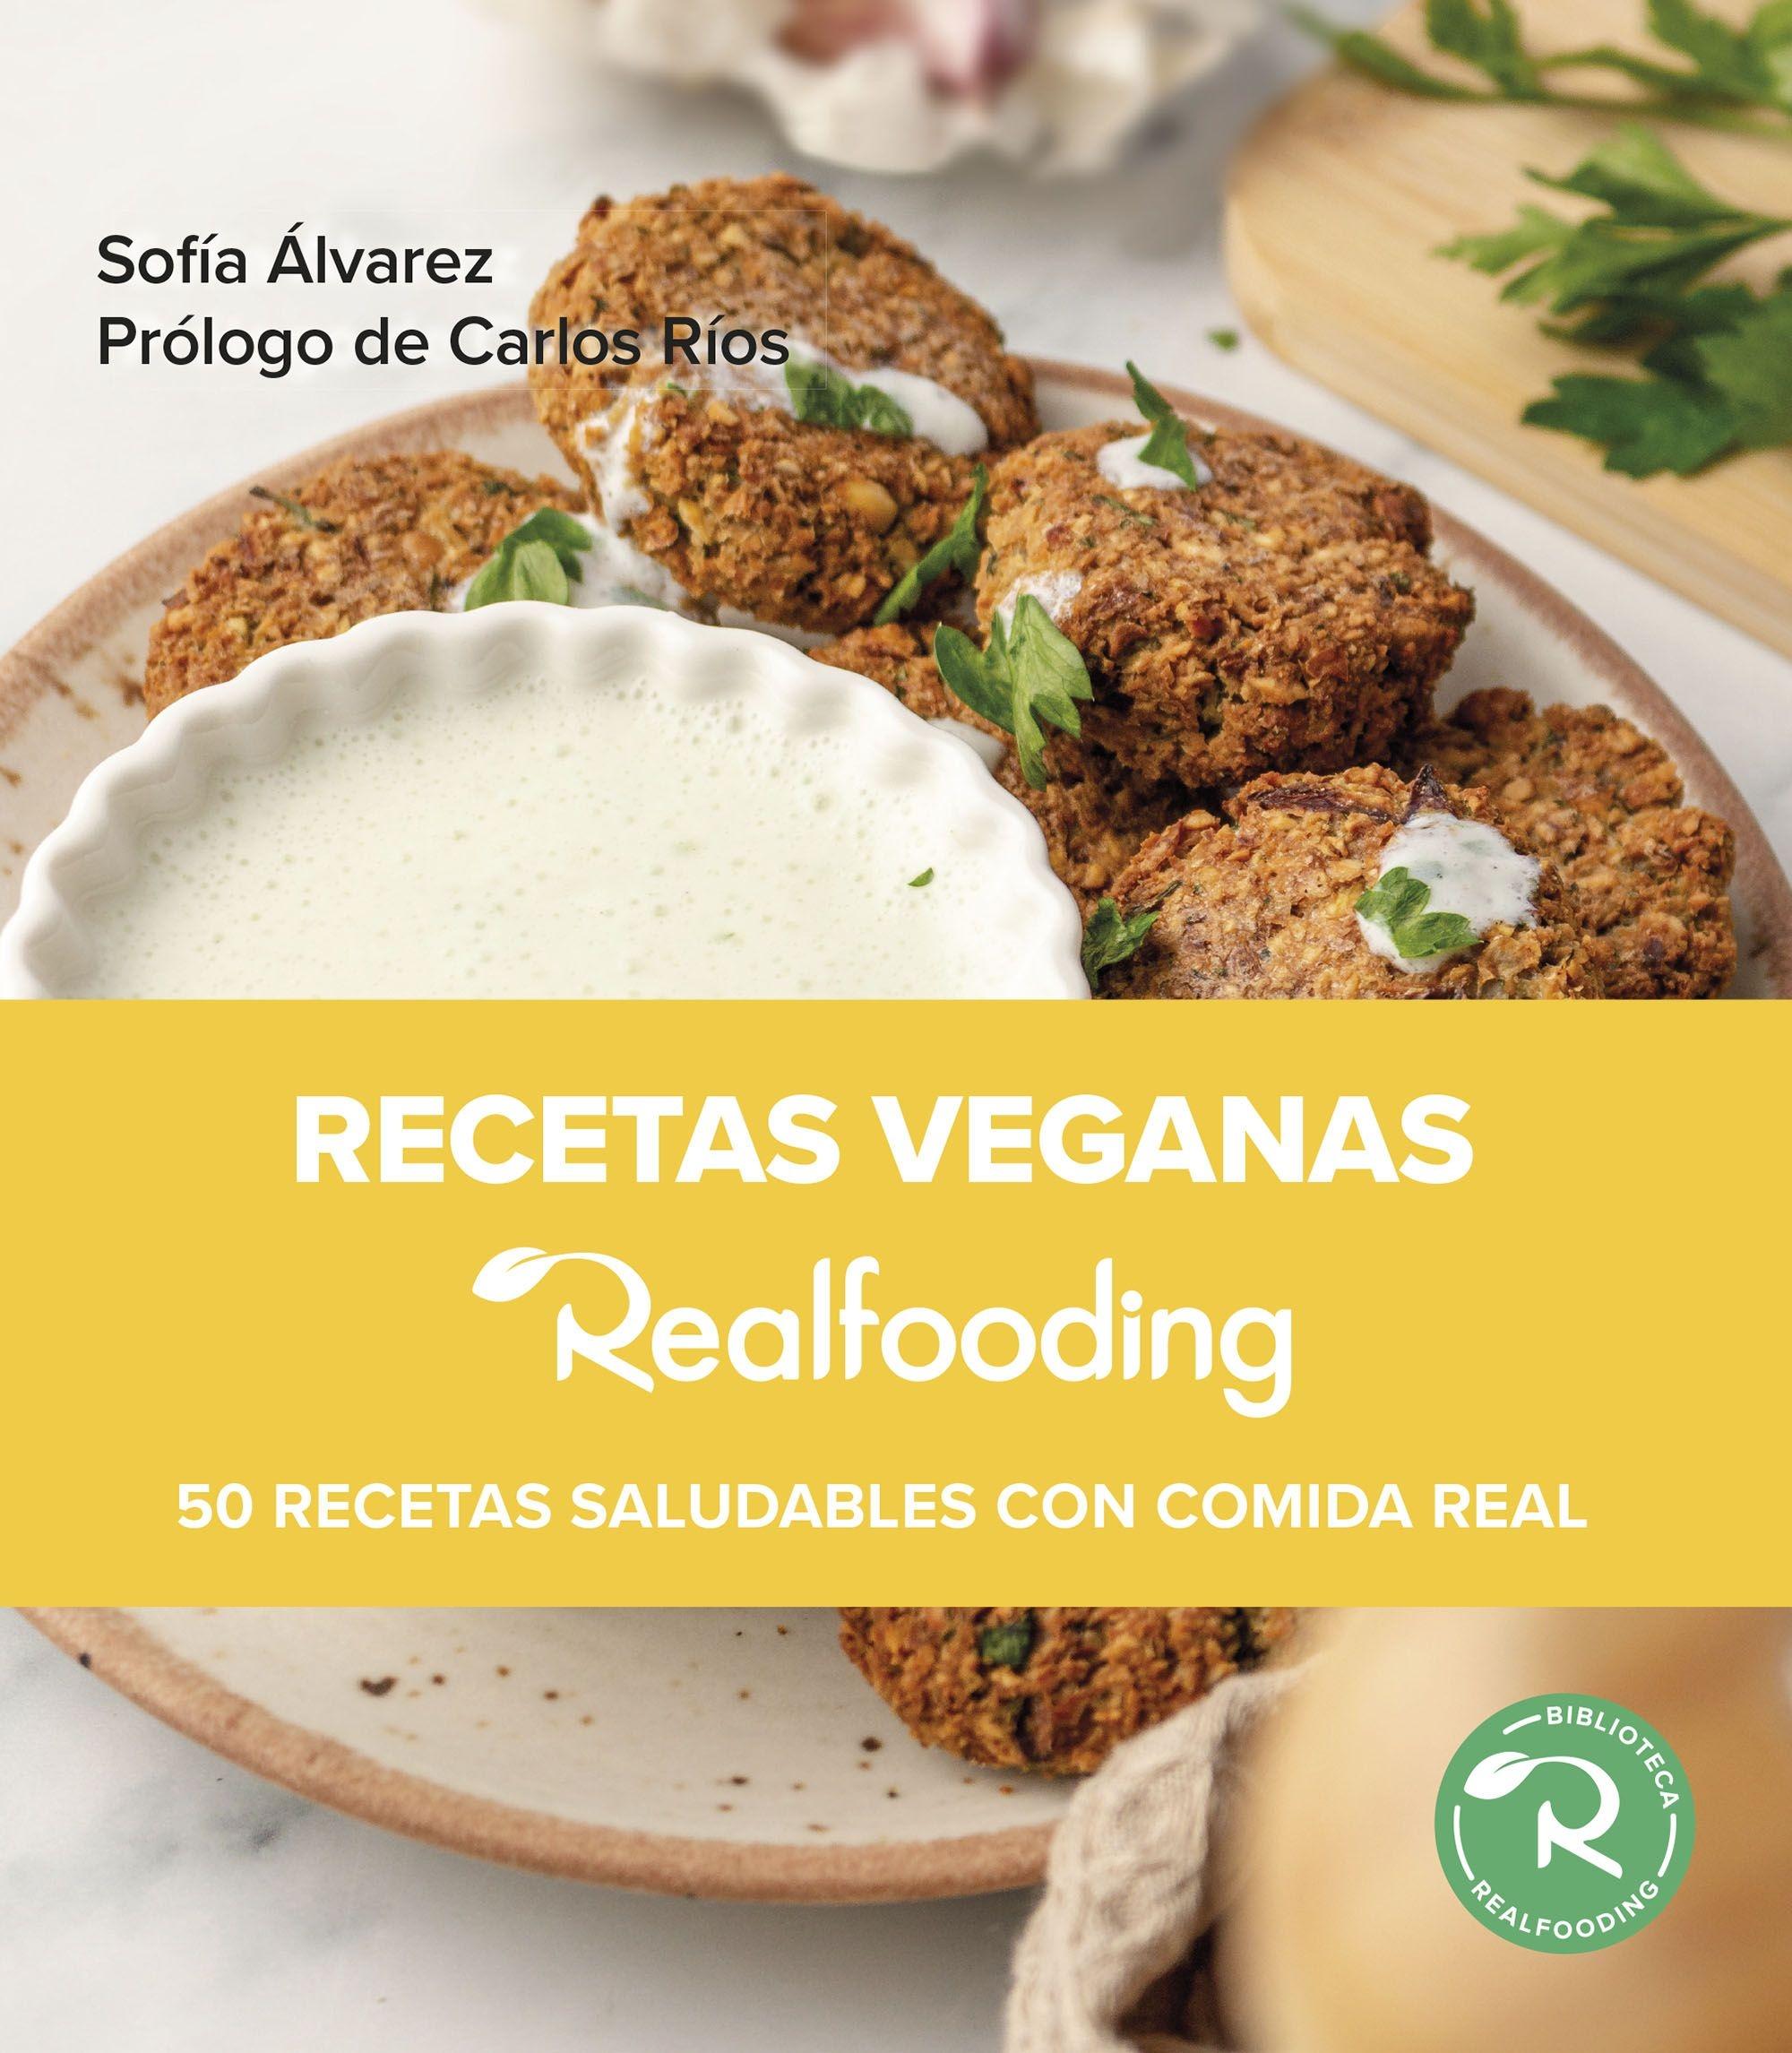 Recetas veganas Realfooding "50 recetas saludables con comida real"